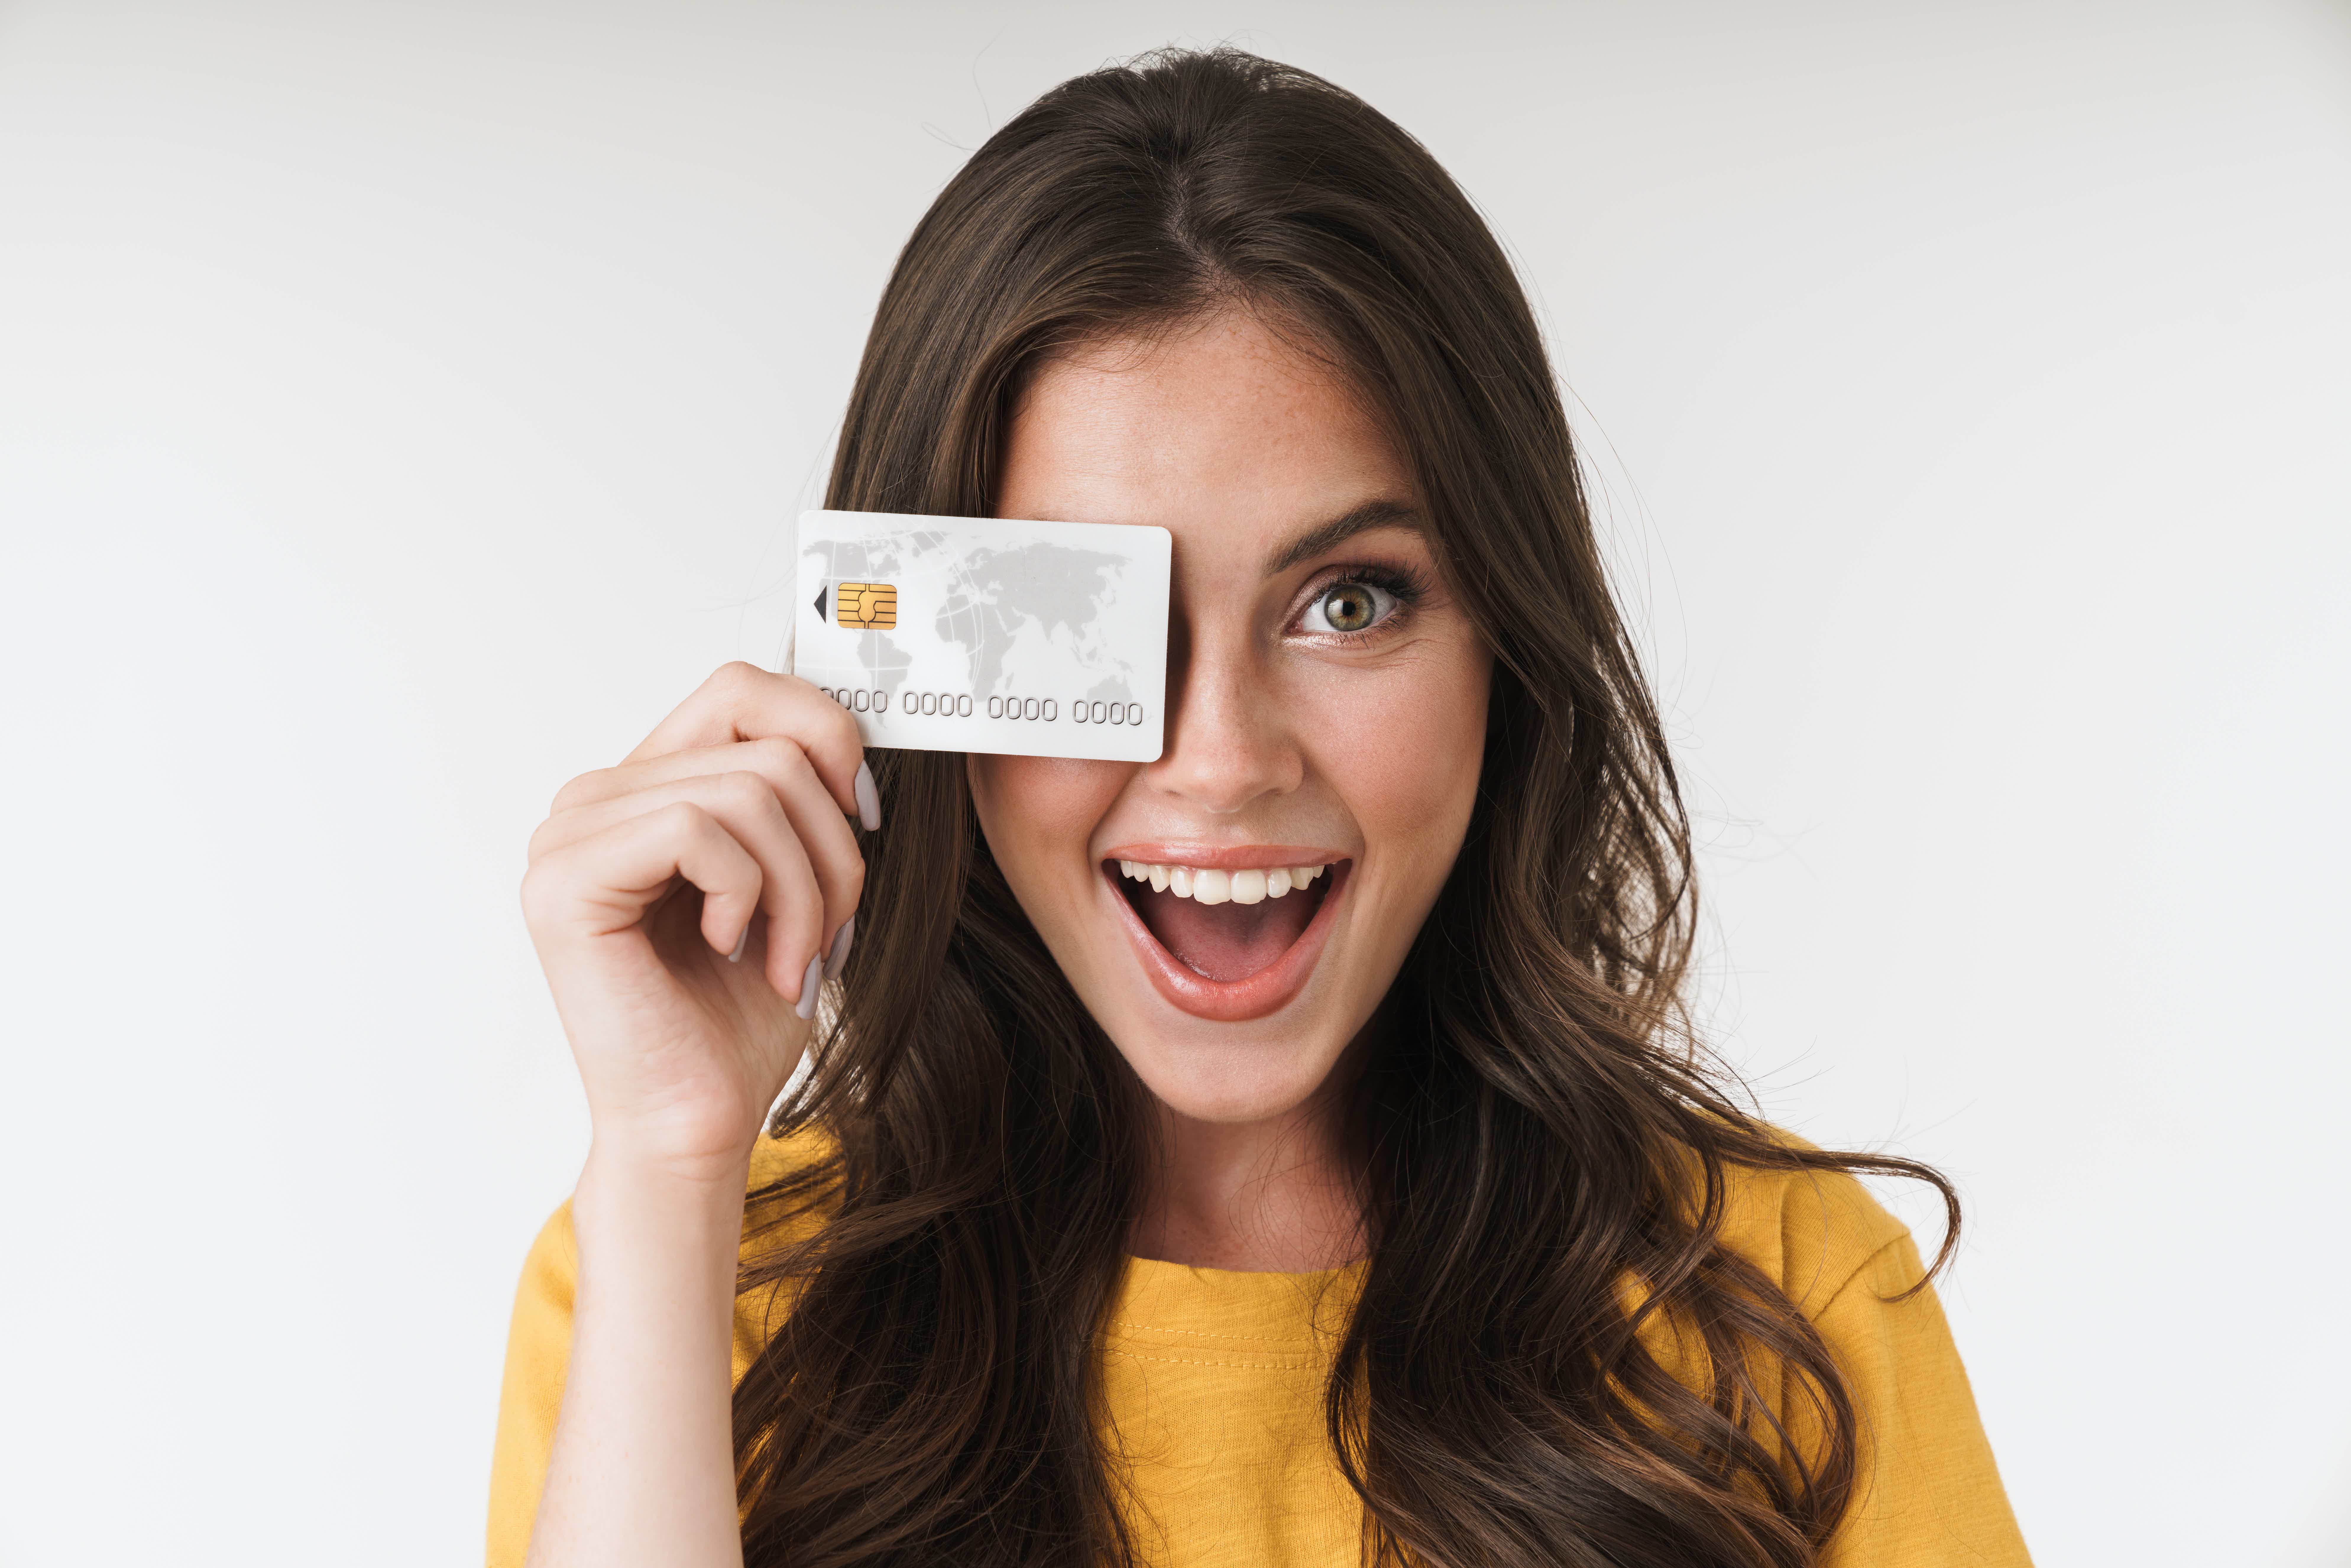 Descubra agora quais são as melhores opções de cartões e como pedir cartão de crédito online em Portugal. Fonte: Adobe Stock